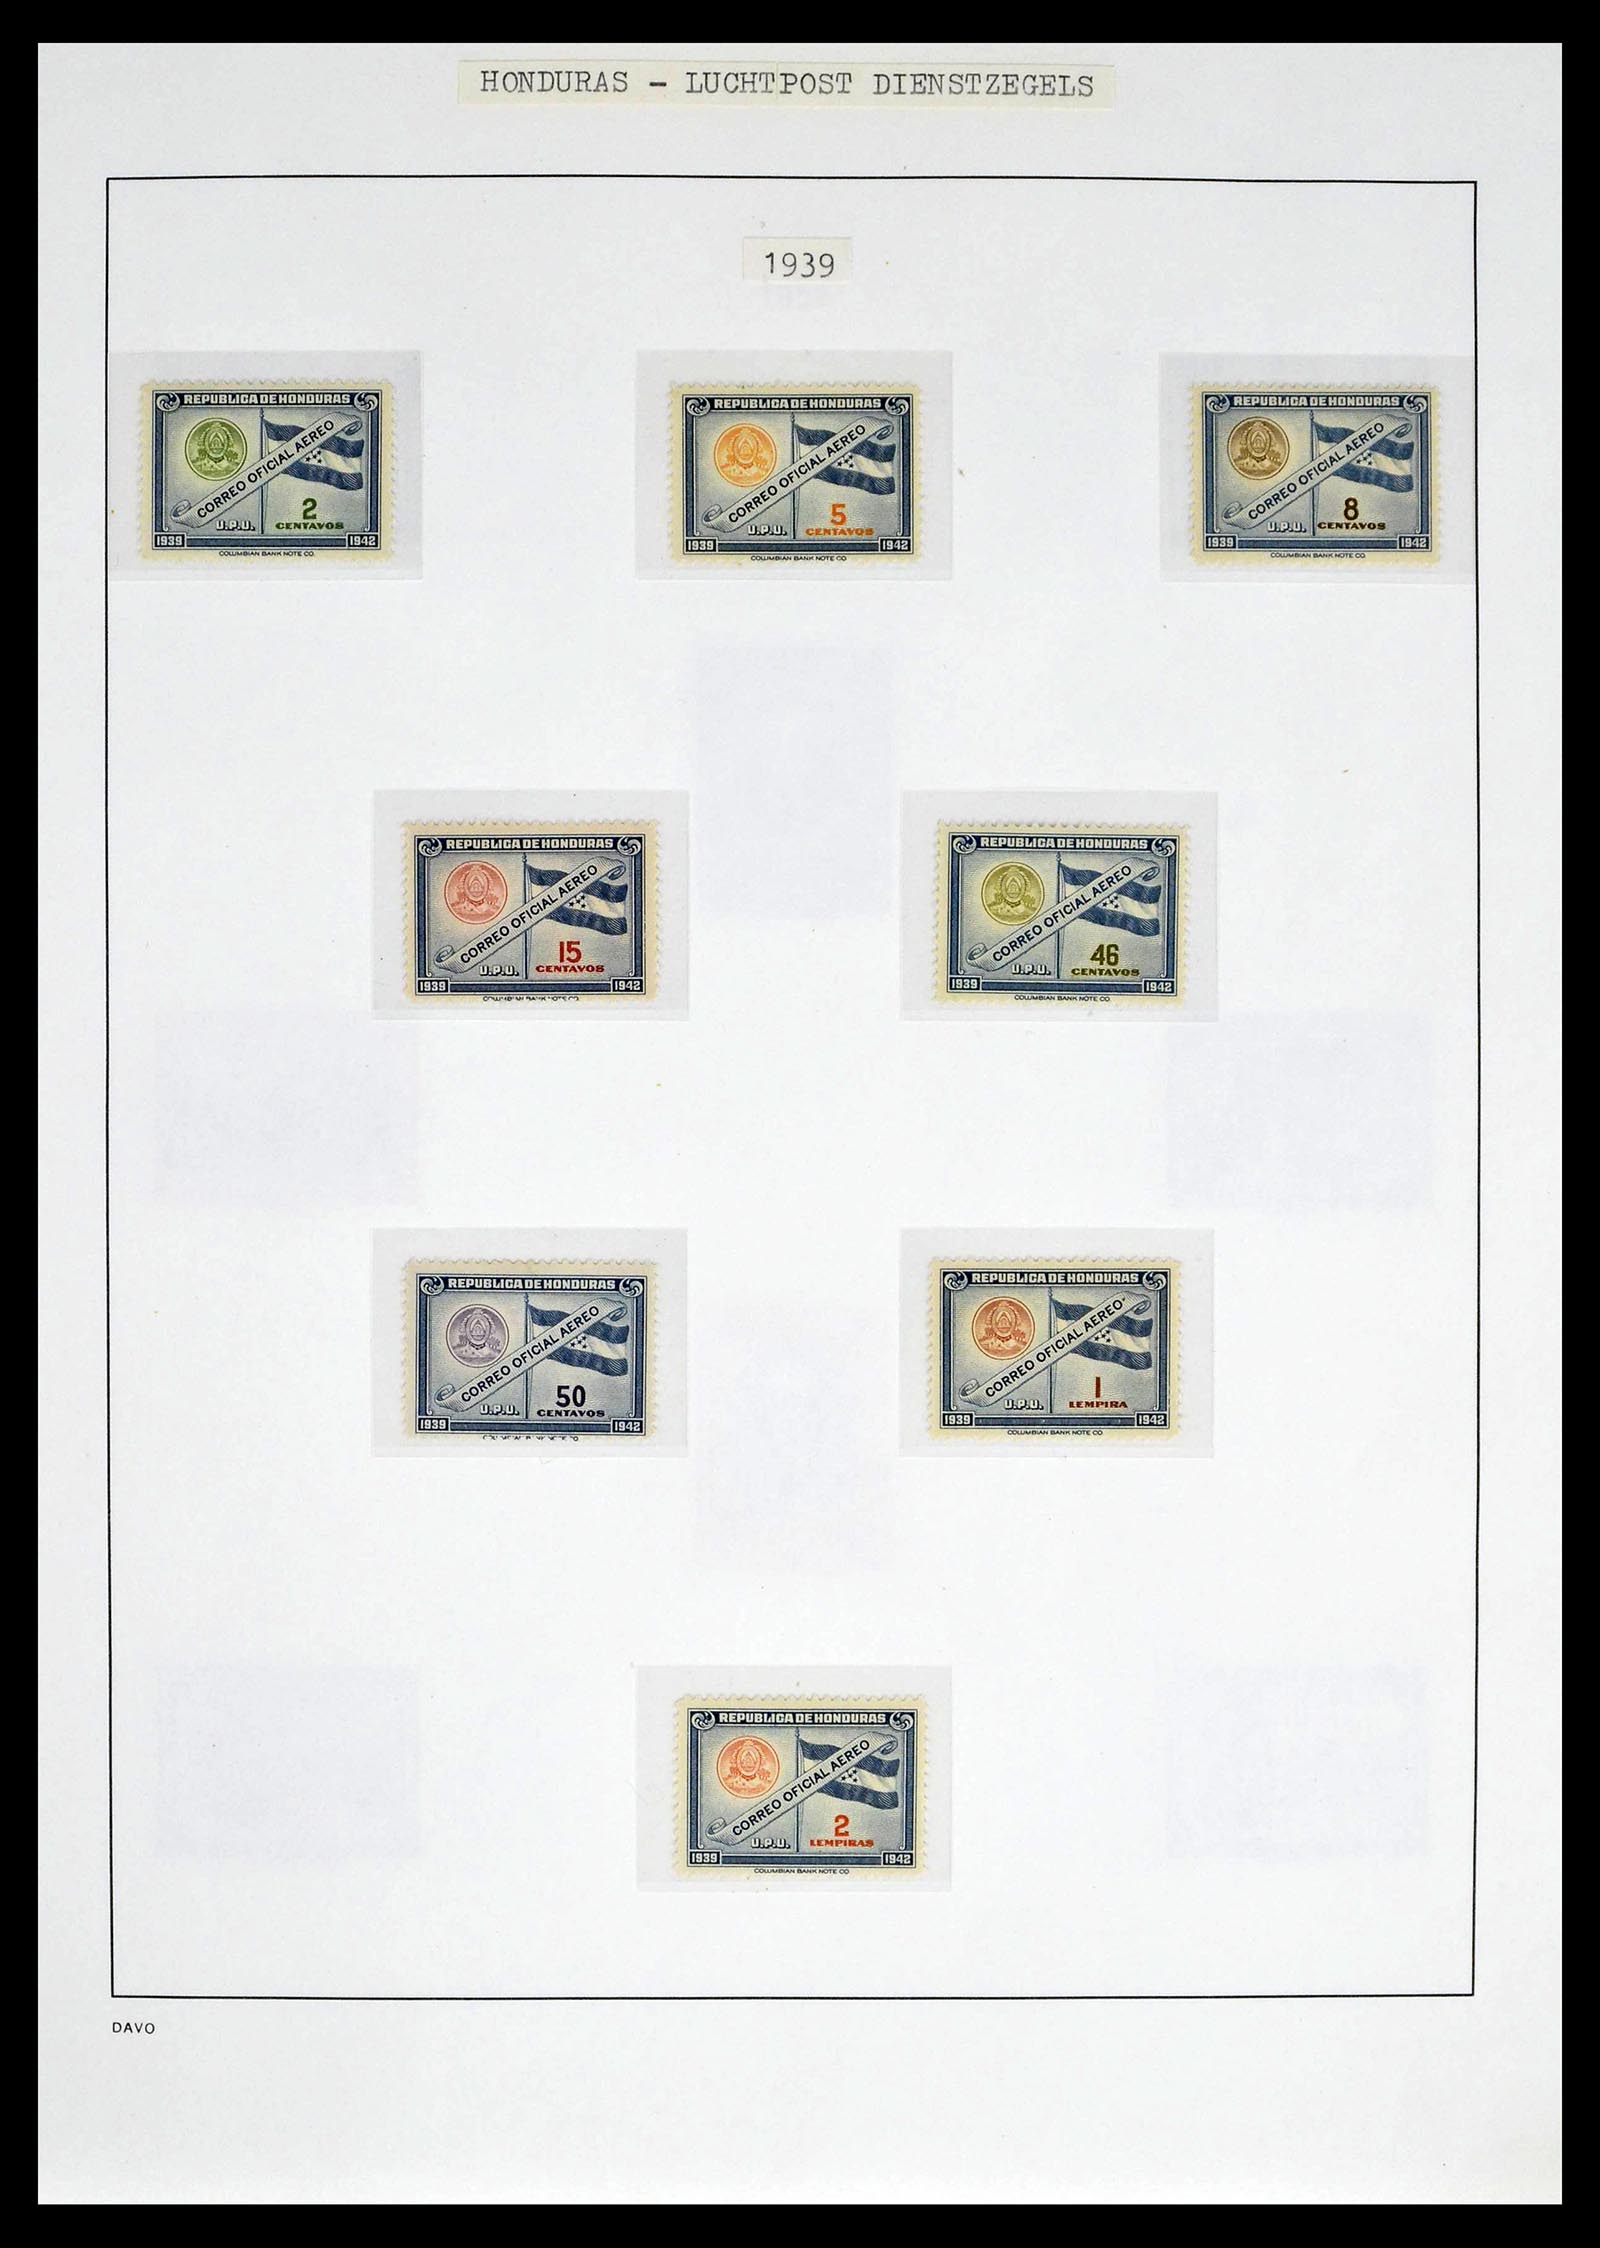 39404 0026 - Postzegelverzameling 39404 Honduras dienstzegels 1890-1974.